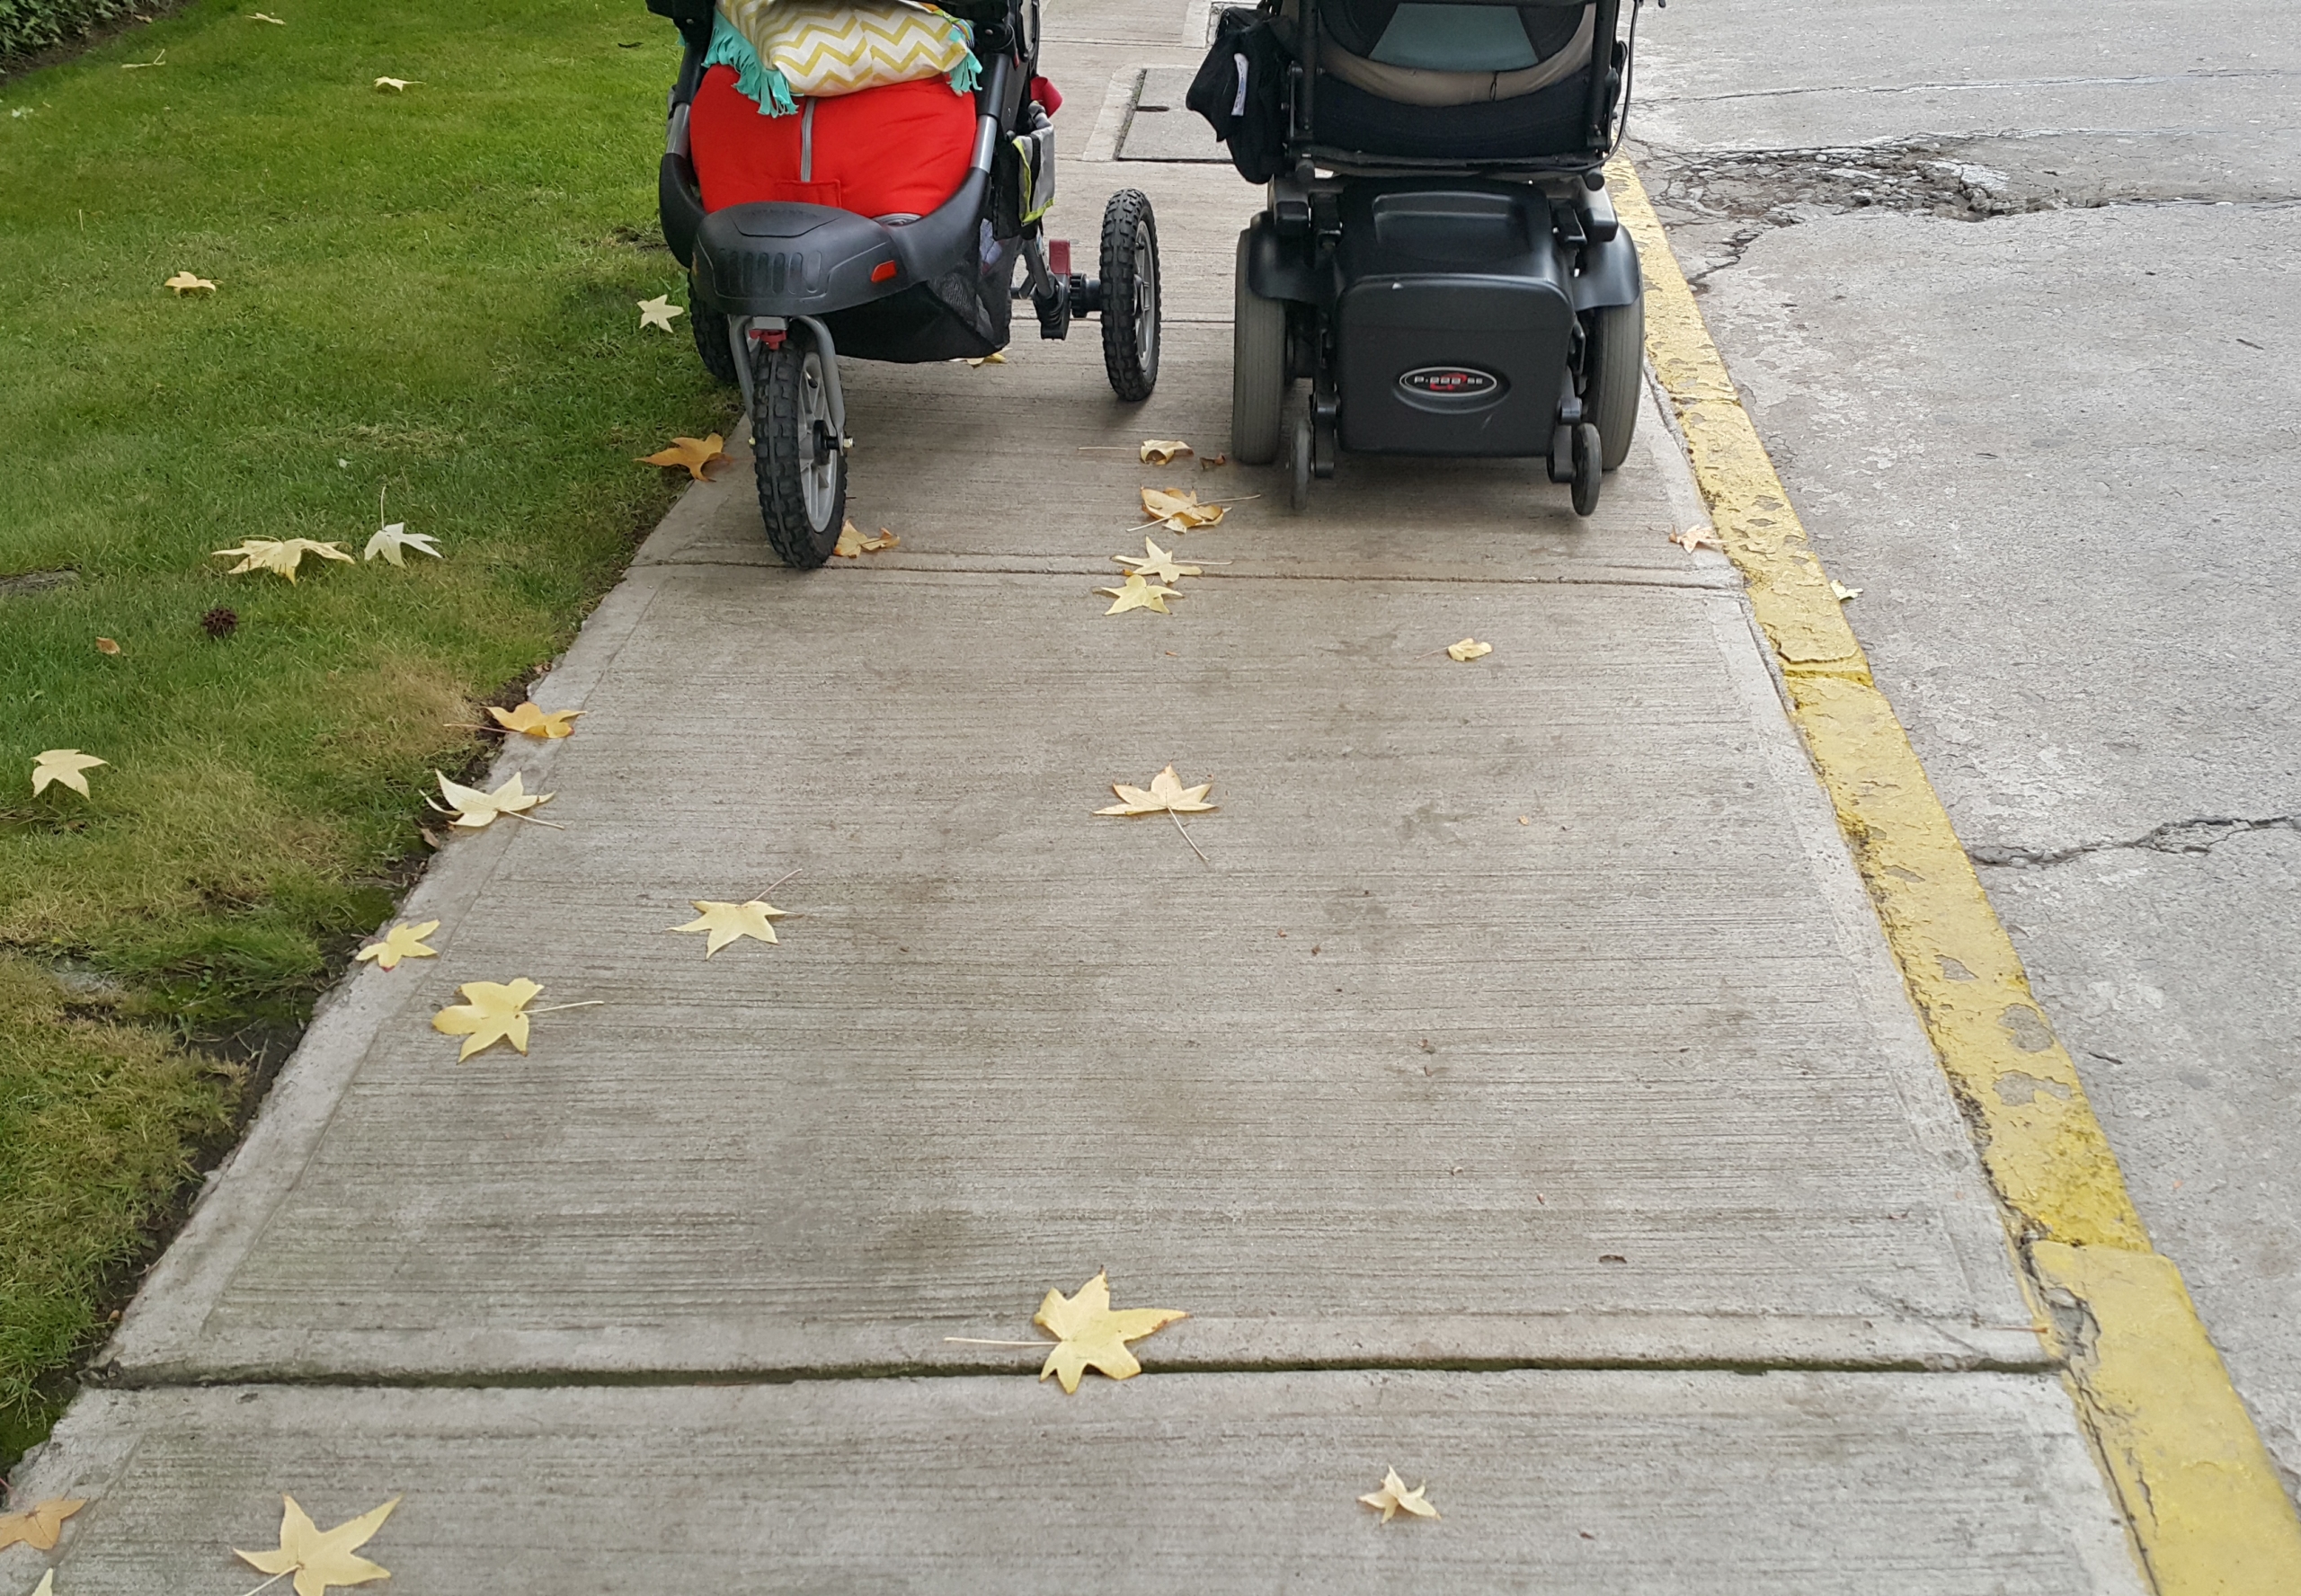 vereda por donde se enfrentan estrechamente una persona en silla de ruedas y otra llevando un coche de niños.